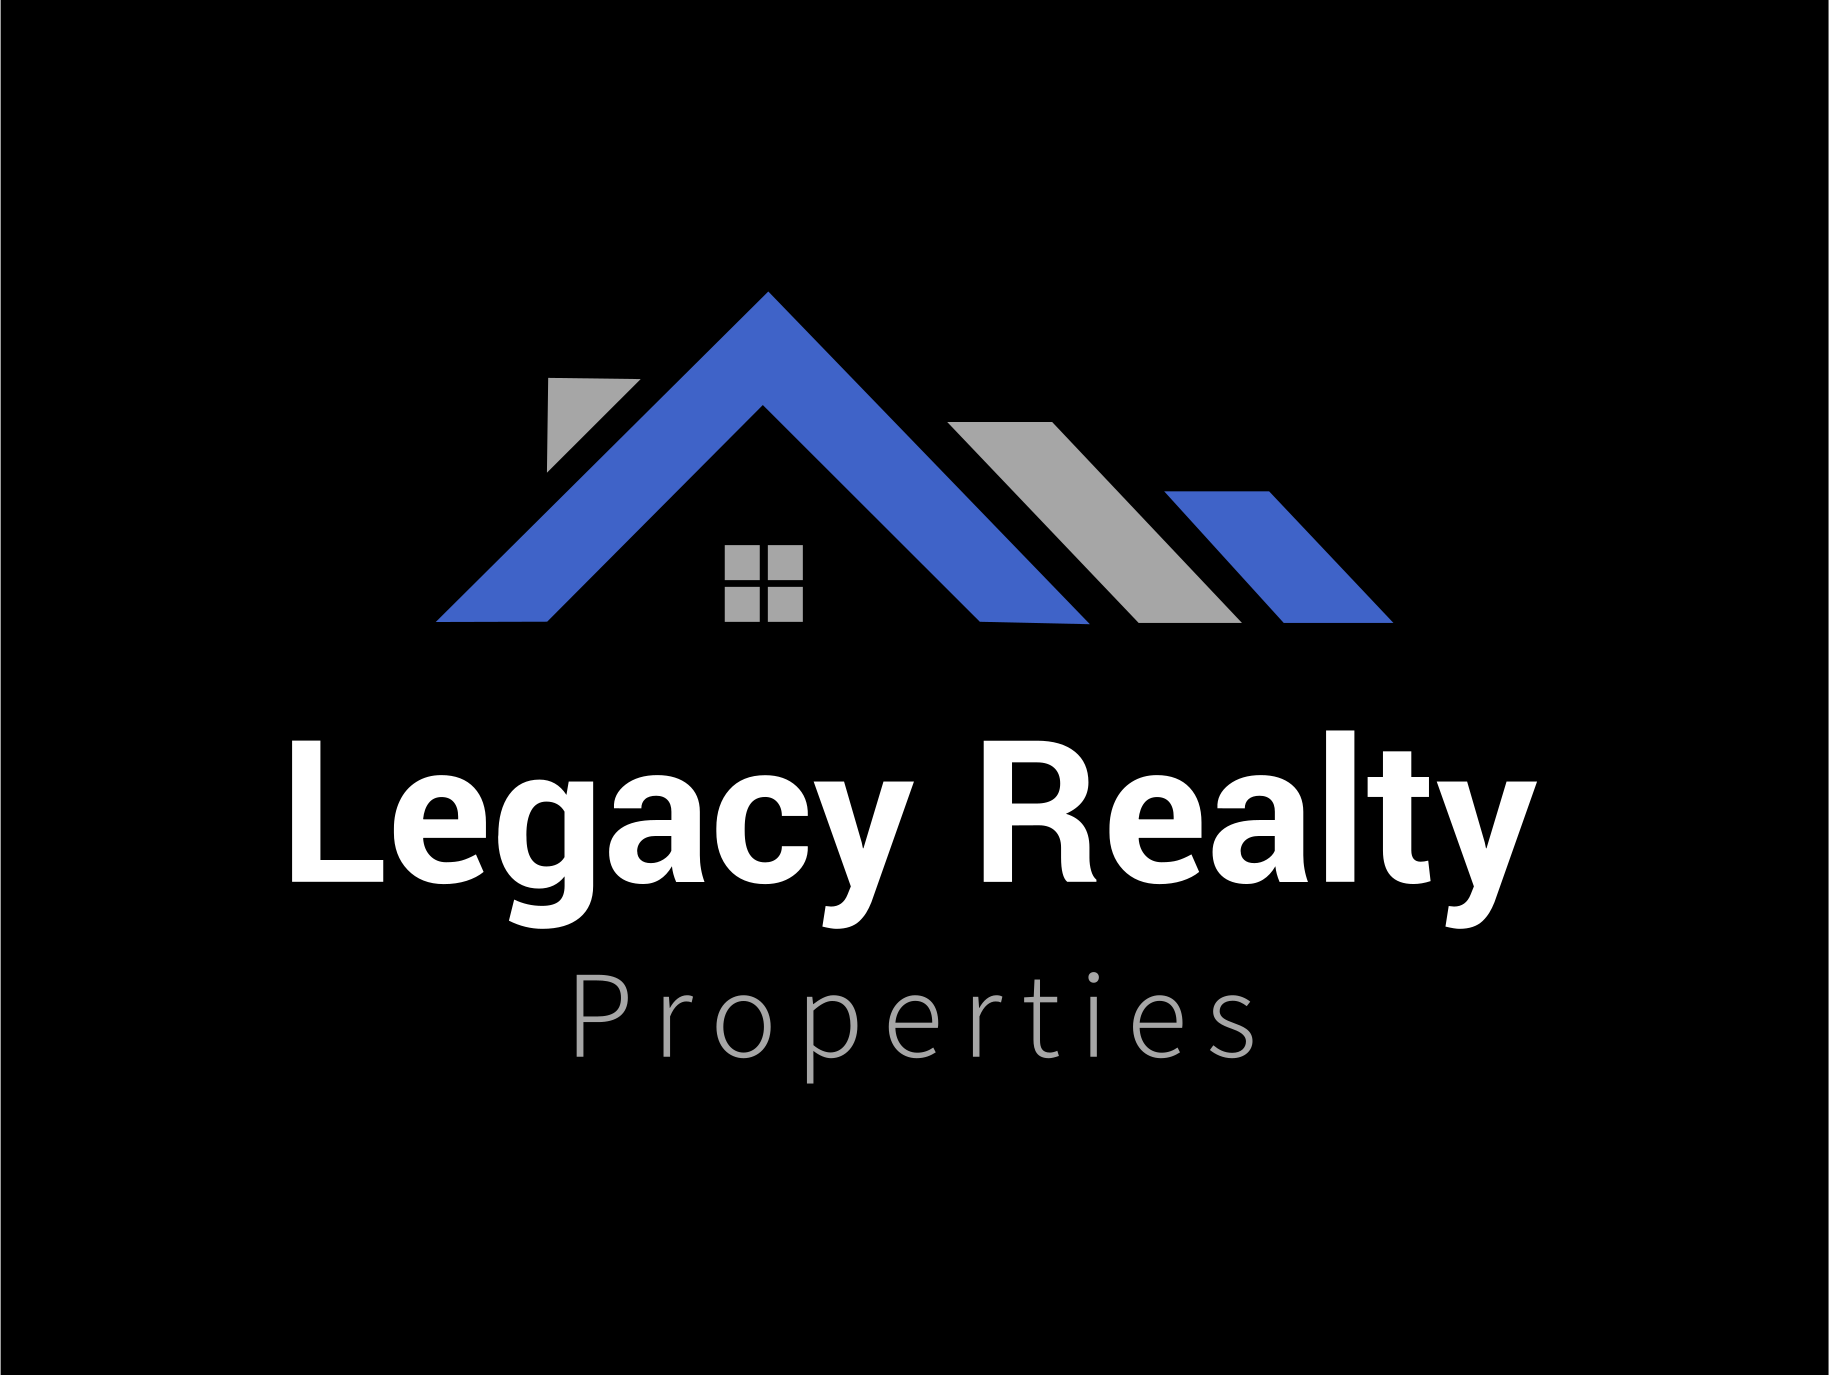 Legacy Realty Properties